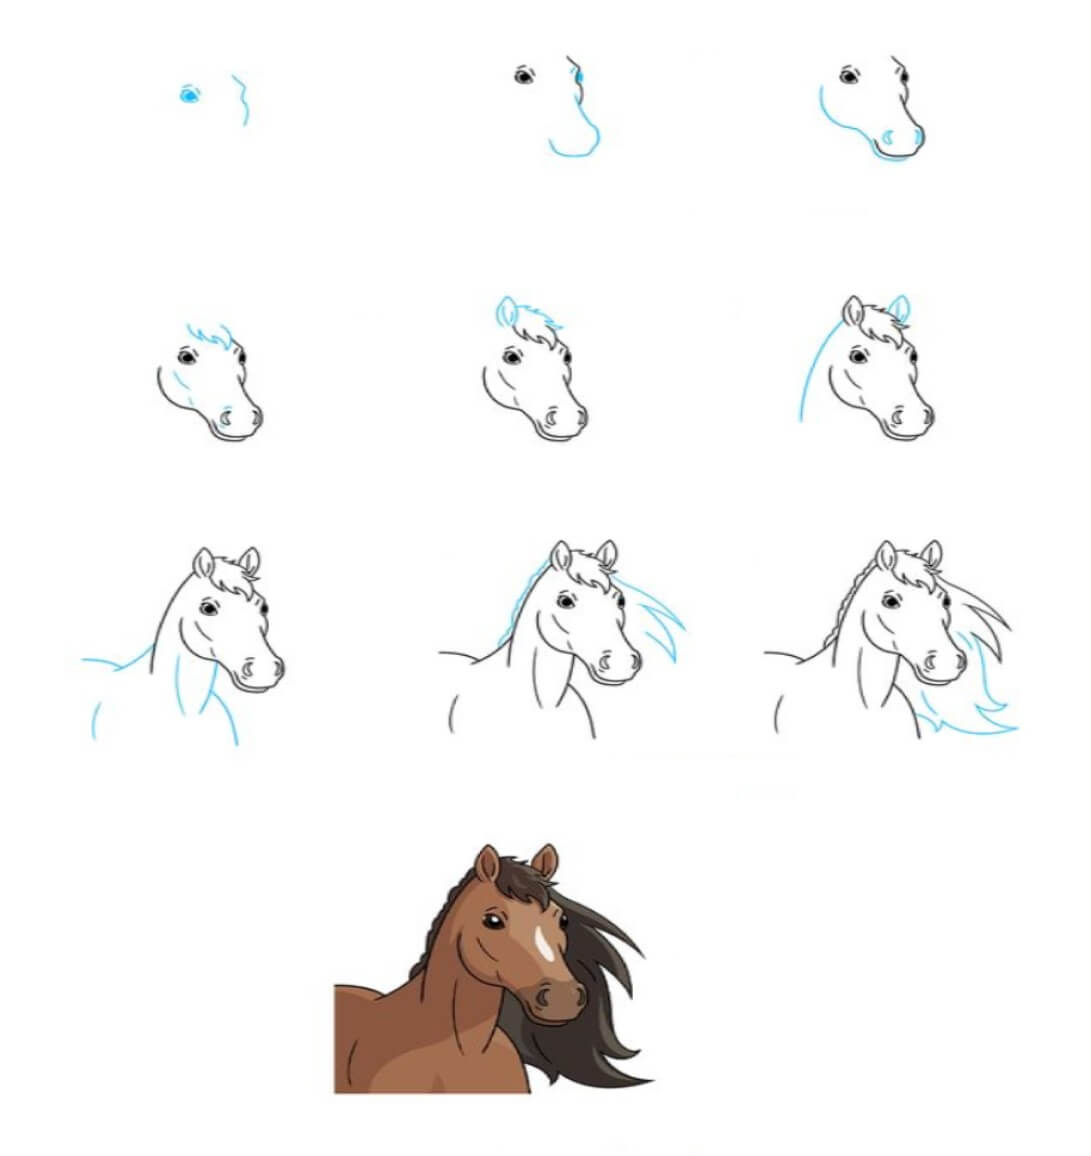 Pferdeidee (2) zeichnen ideen